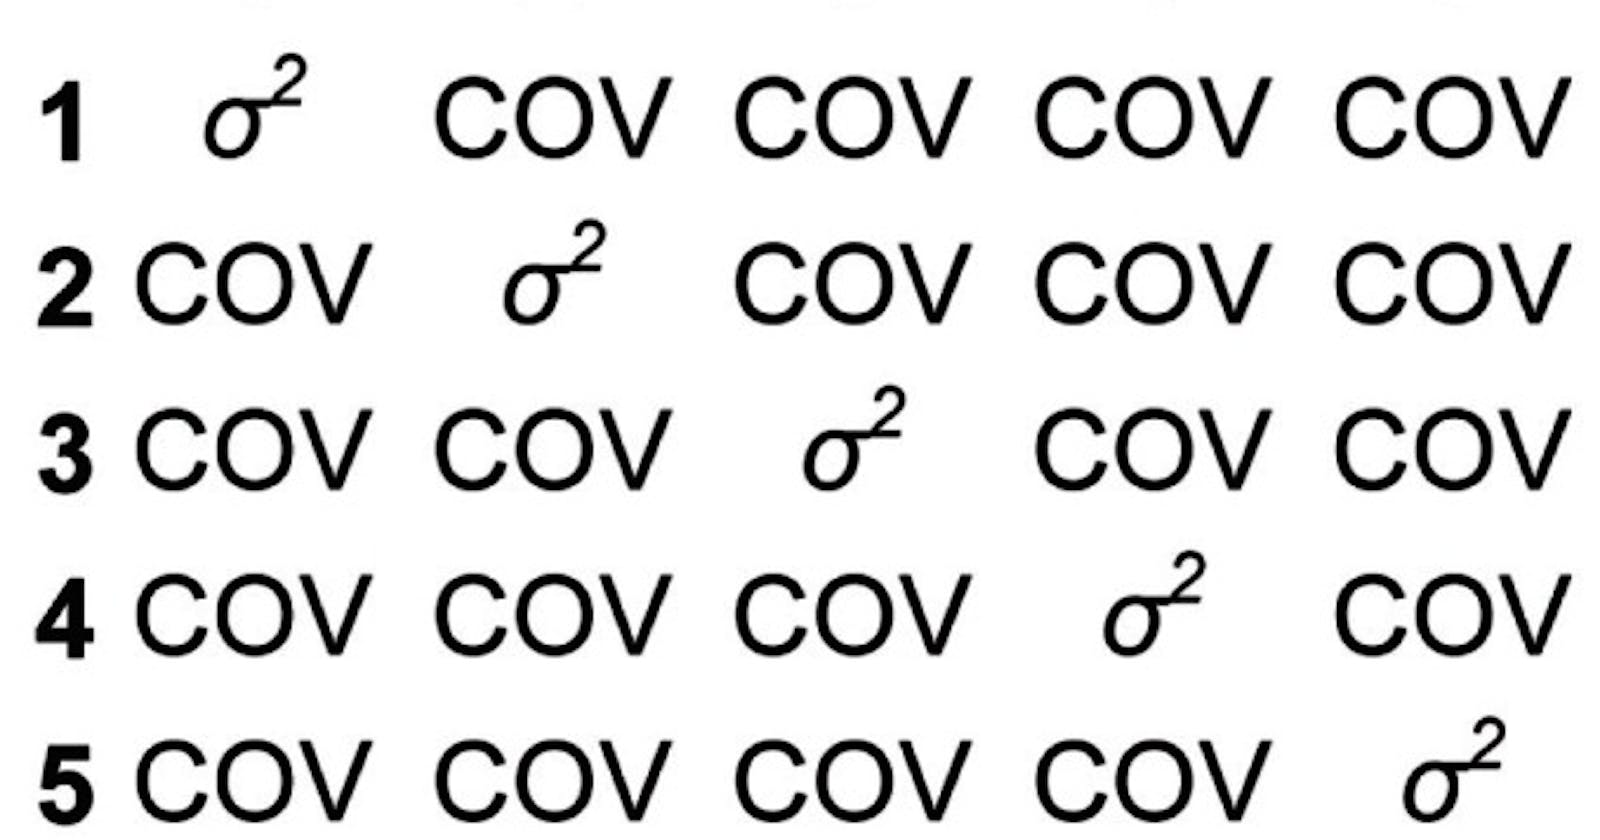 Variance-Covariance Matrix: